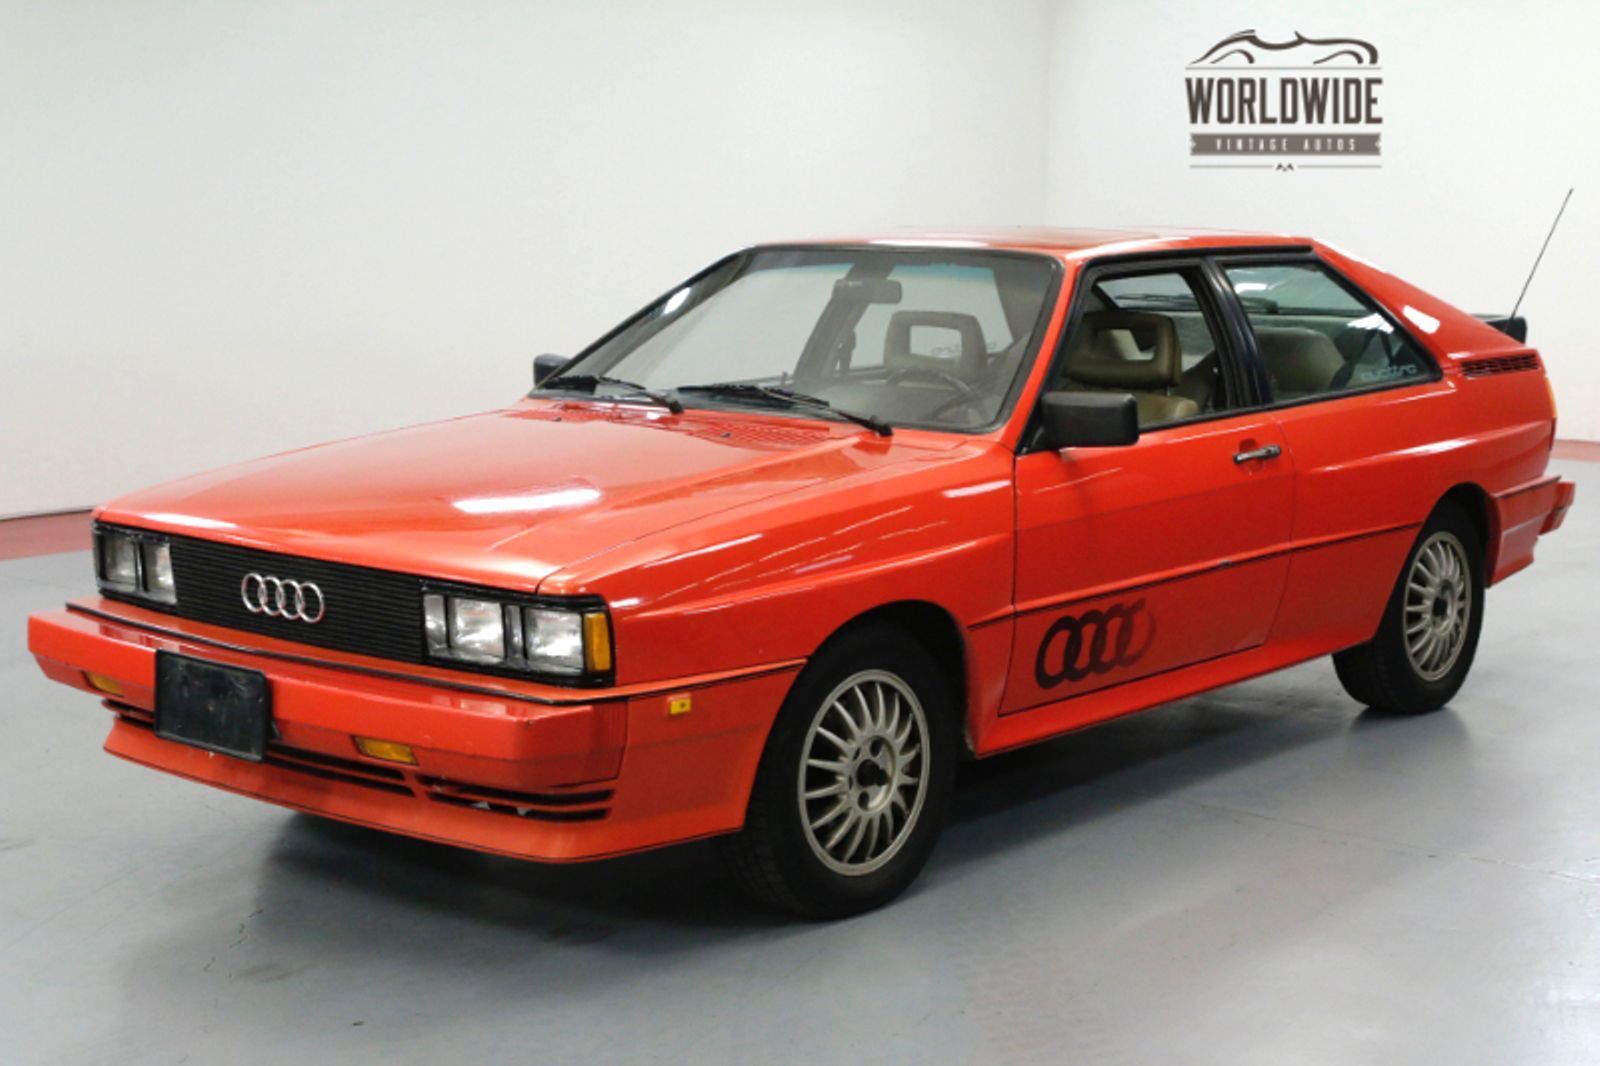 Купить ауди кватро бу. "Audi" "quattro" "1983" ur. Ауди кватро 1983. "Audi" "quattro" "1983" if. Audi ur quattro.